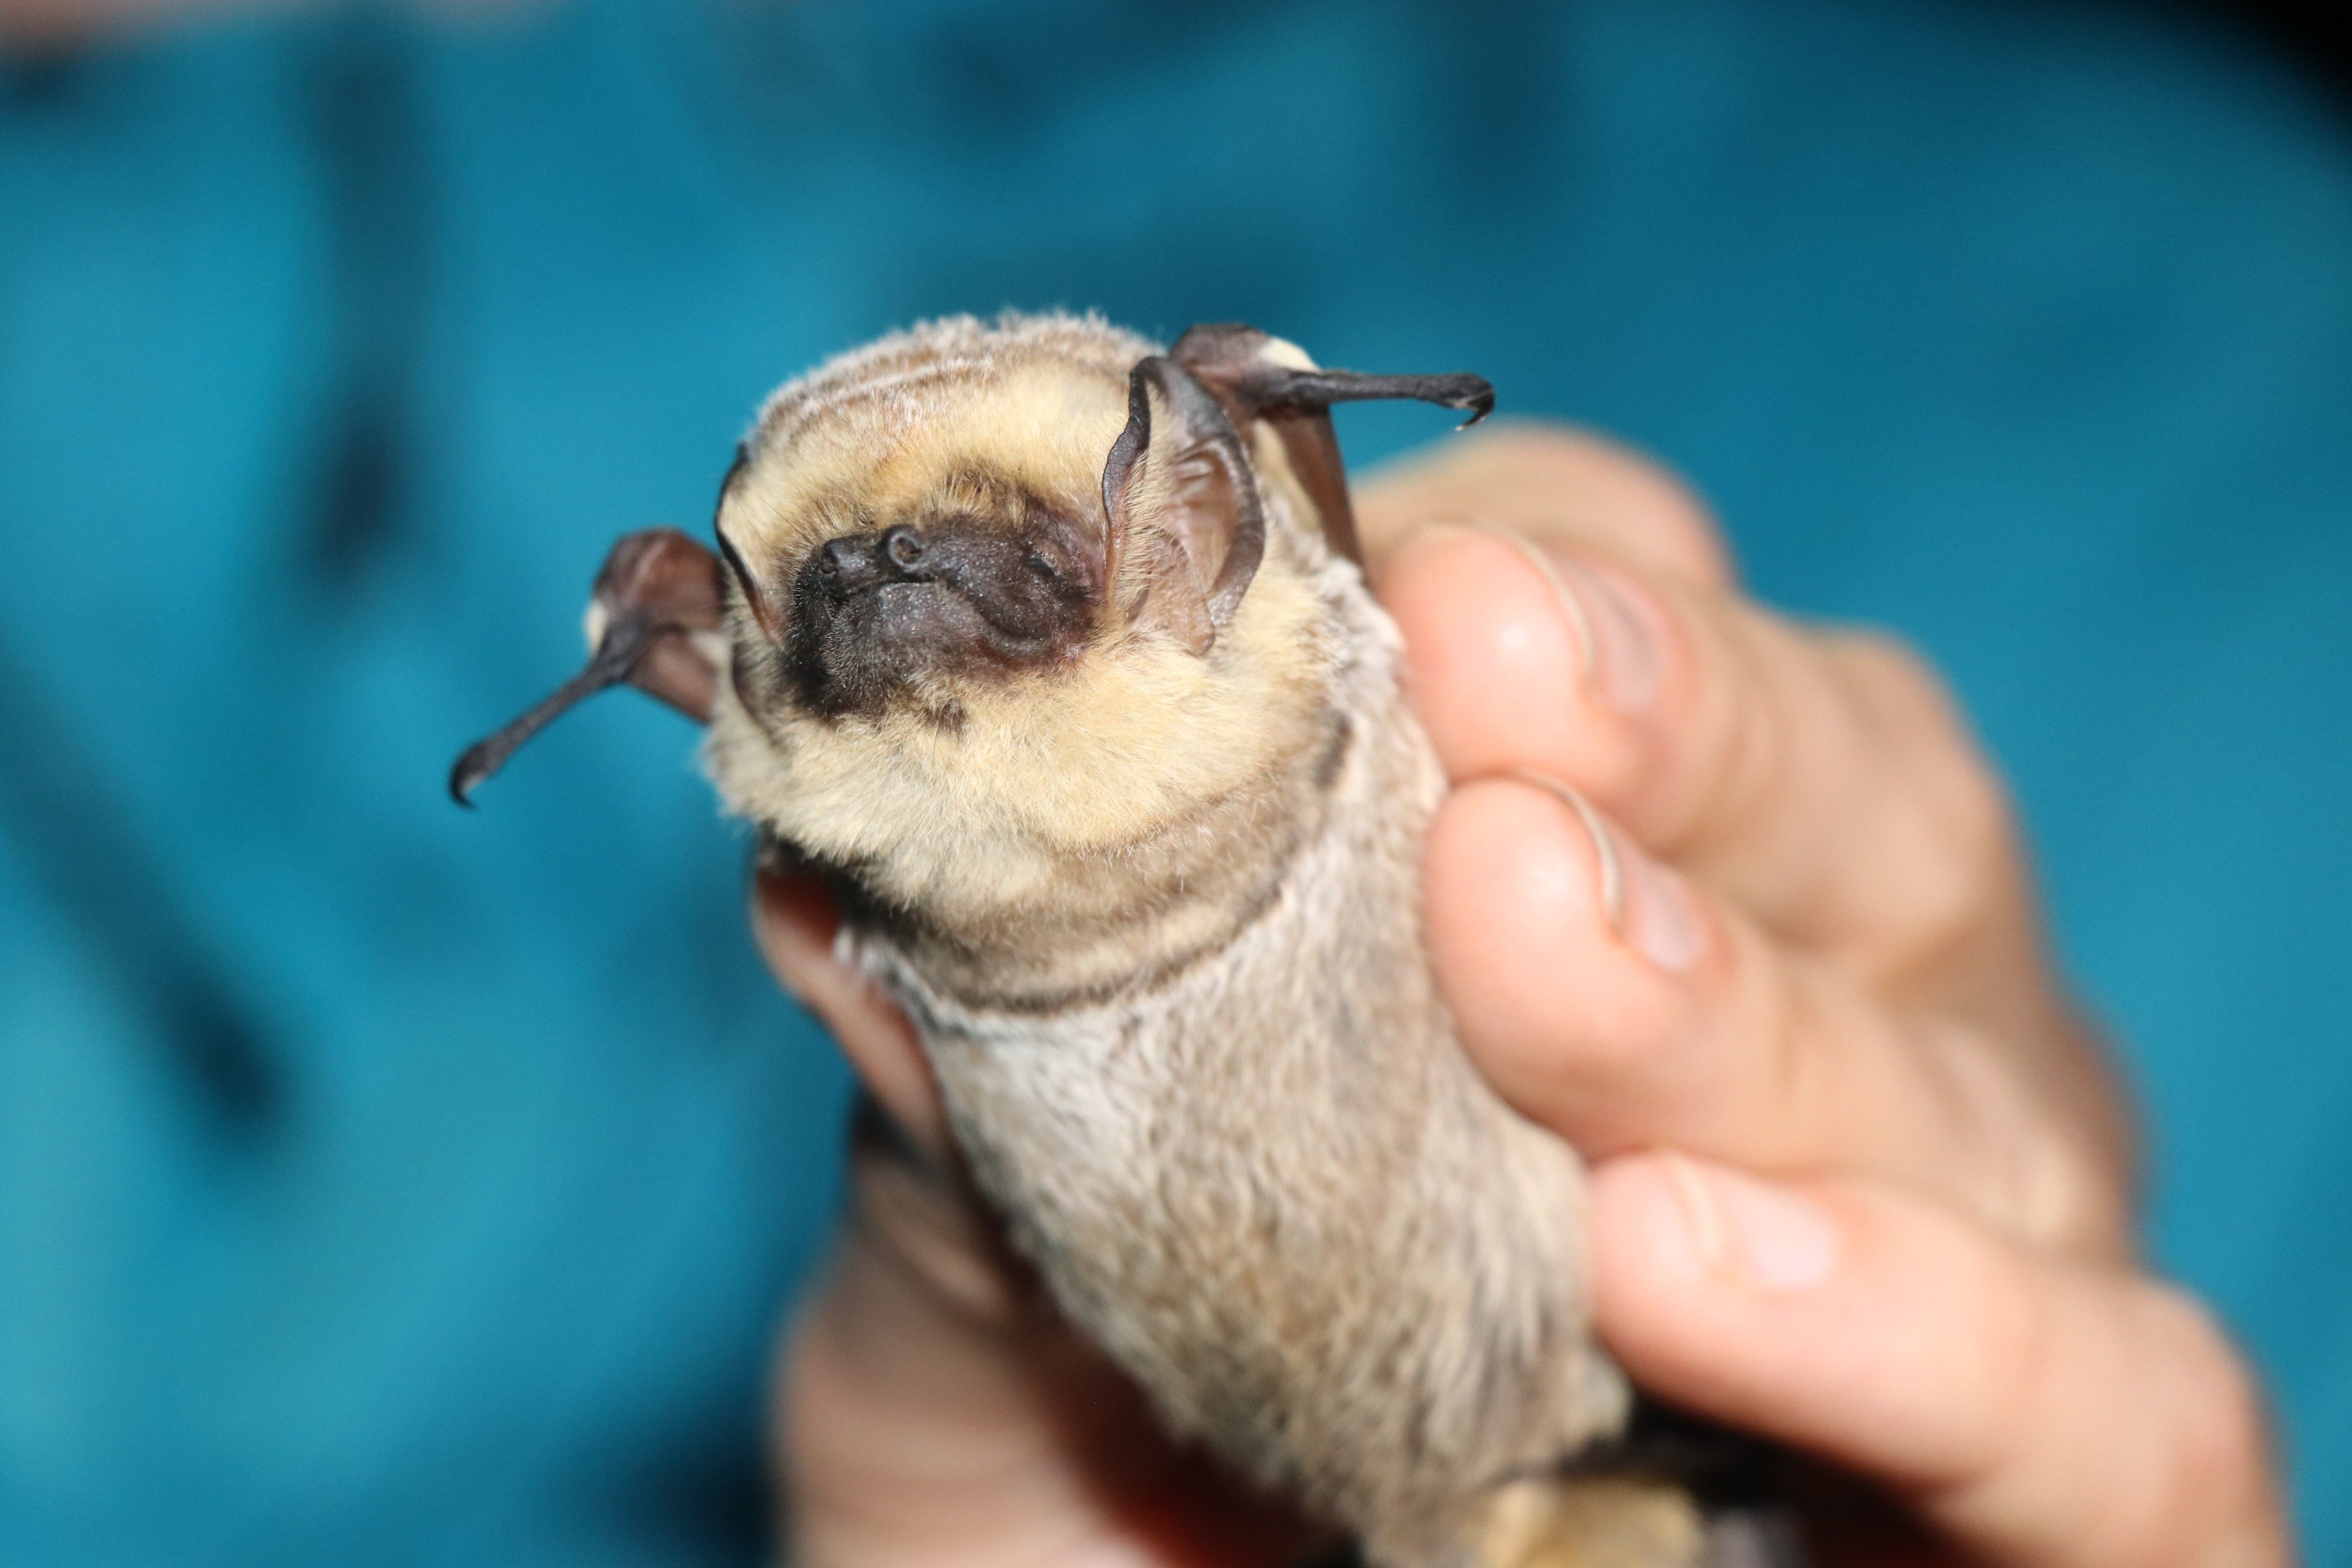 Fotografía cedida por el Parque Nacional Galápagos que muestra a un espécimen de murciélago, en las Islas Galápagos (Ecuador). EFE/Parque Nacional Galápagos 